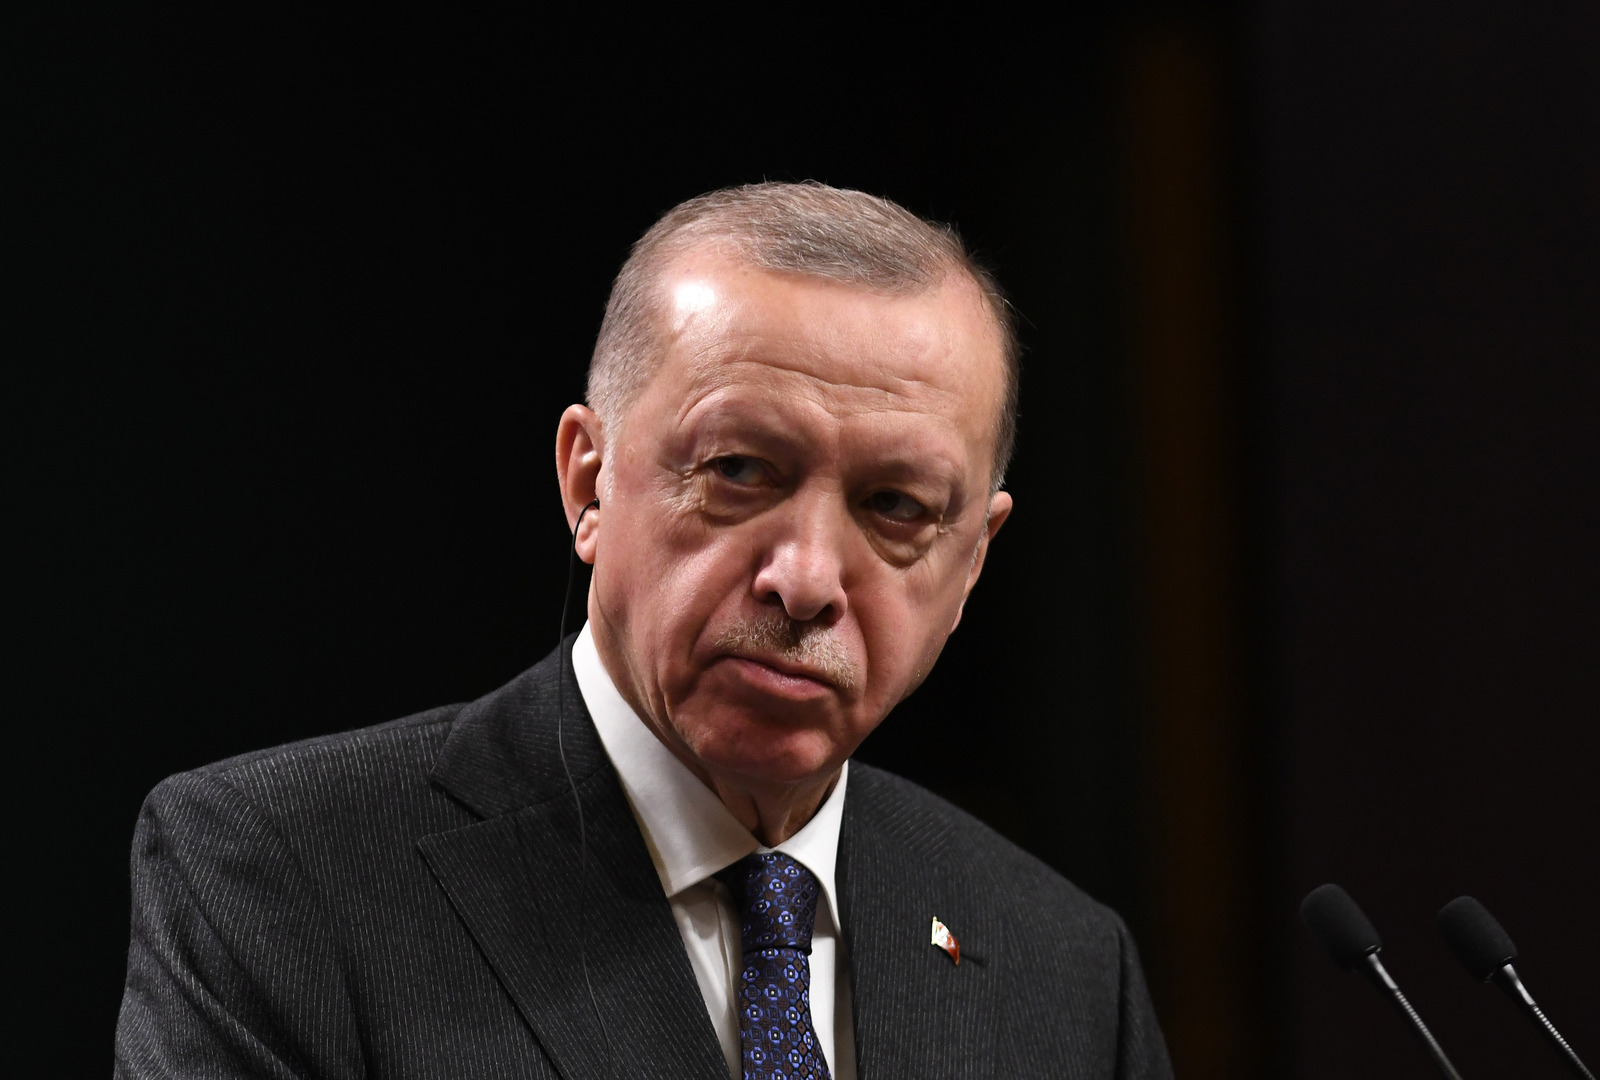 أردوغان: ندعم بقوة مساعي السلام الدائم بين أذربيجان وأرمينيا من أجل إرساء الأمن والاستقرار بالمنطقة